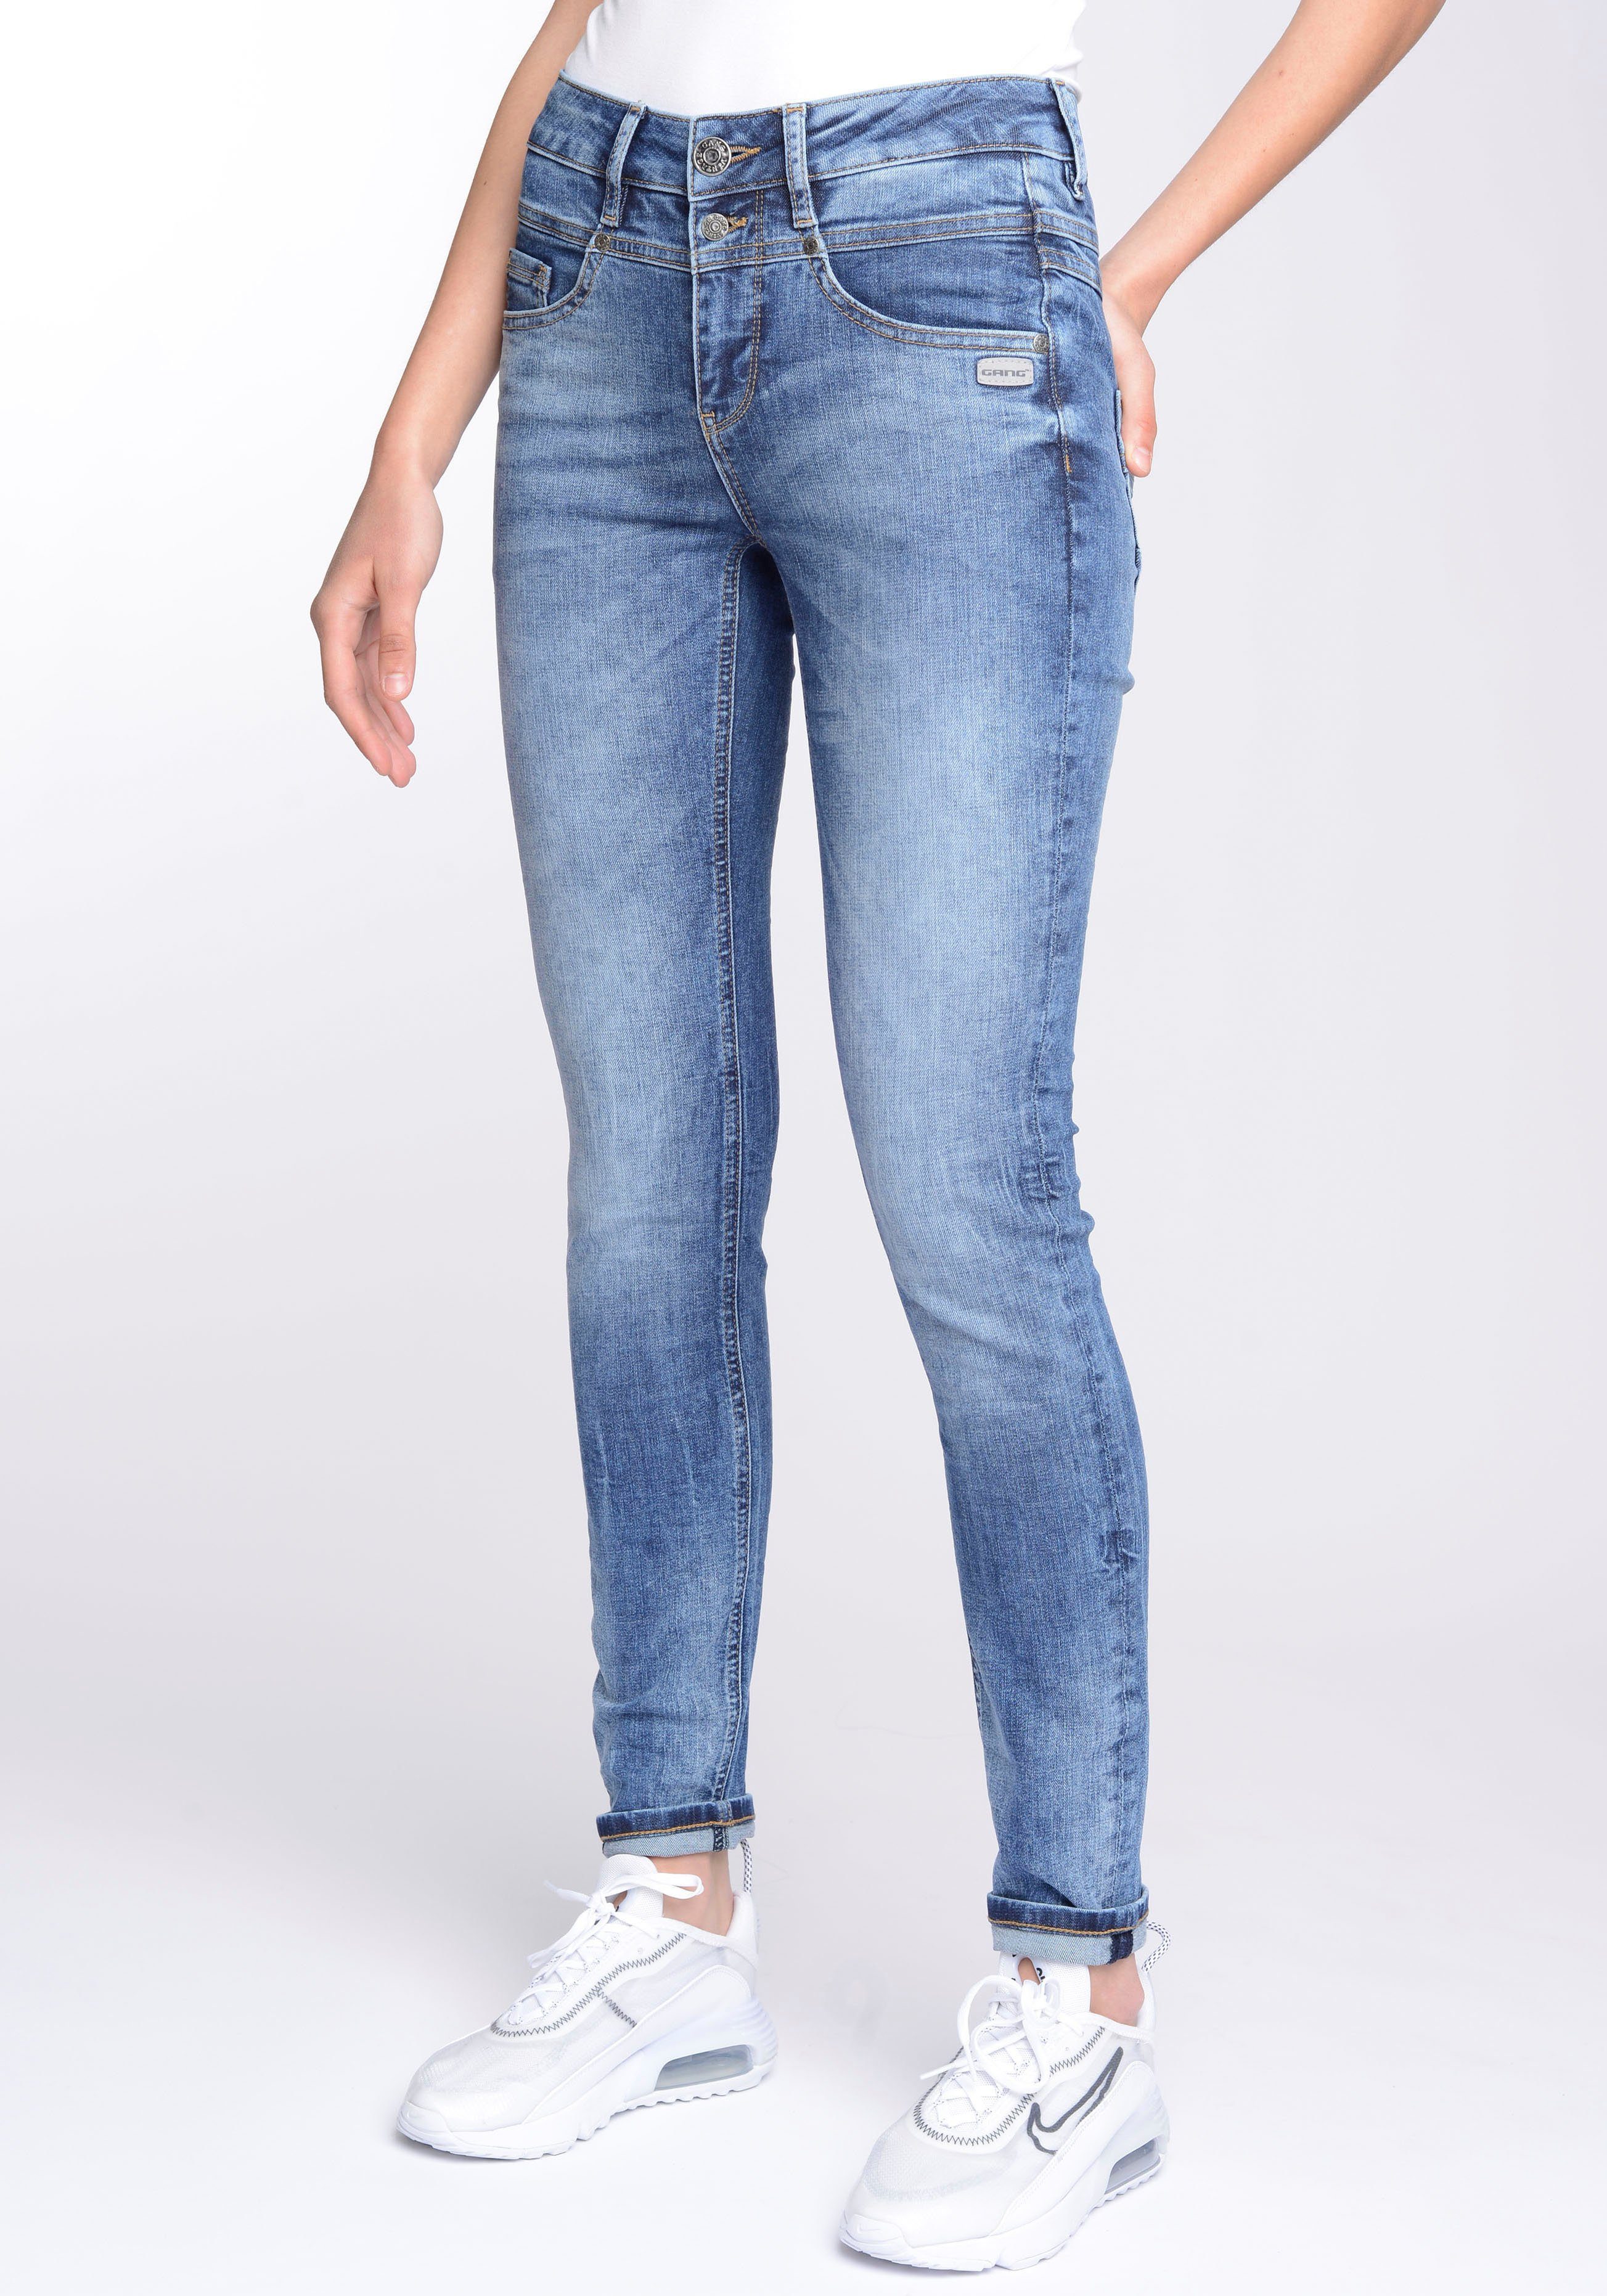 GANG Skinny-fit-Jeans 94MORA und Passe (mid Midblue blue) 3-Knopf-Verschluss Wash mit vorne